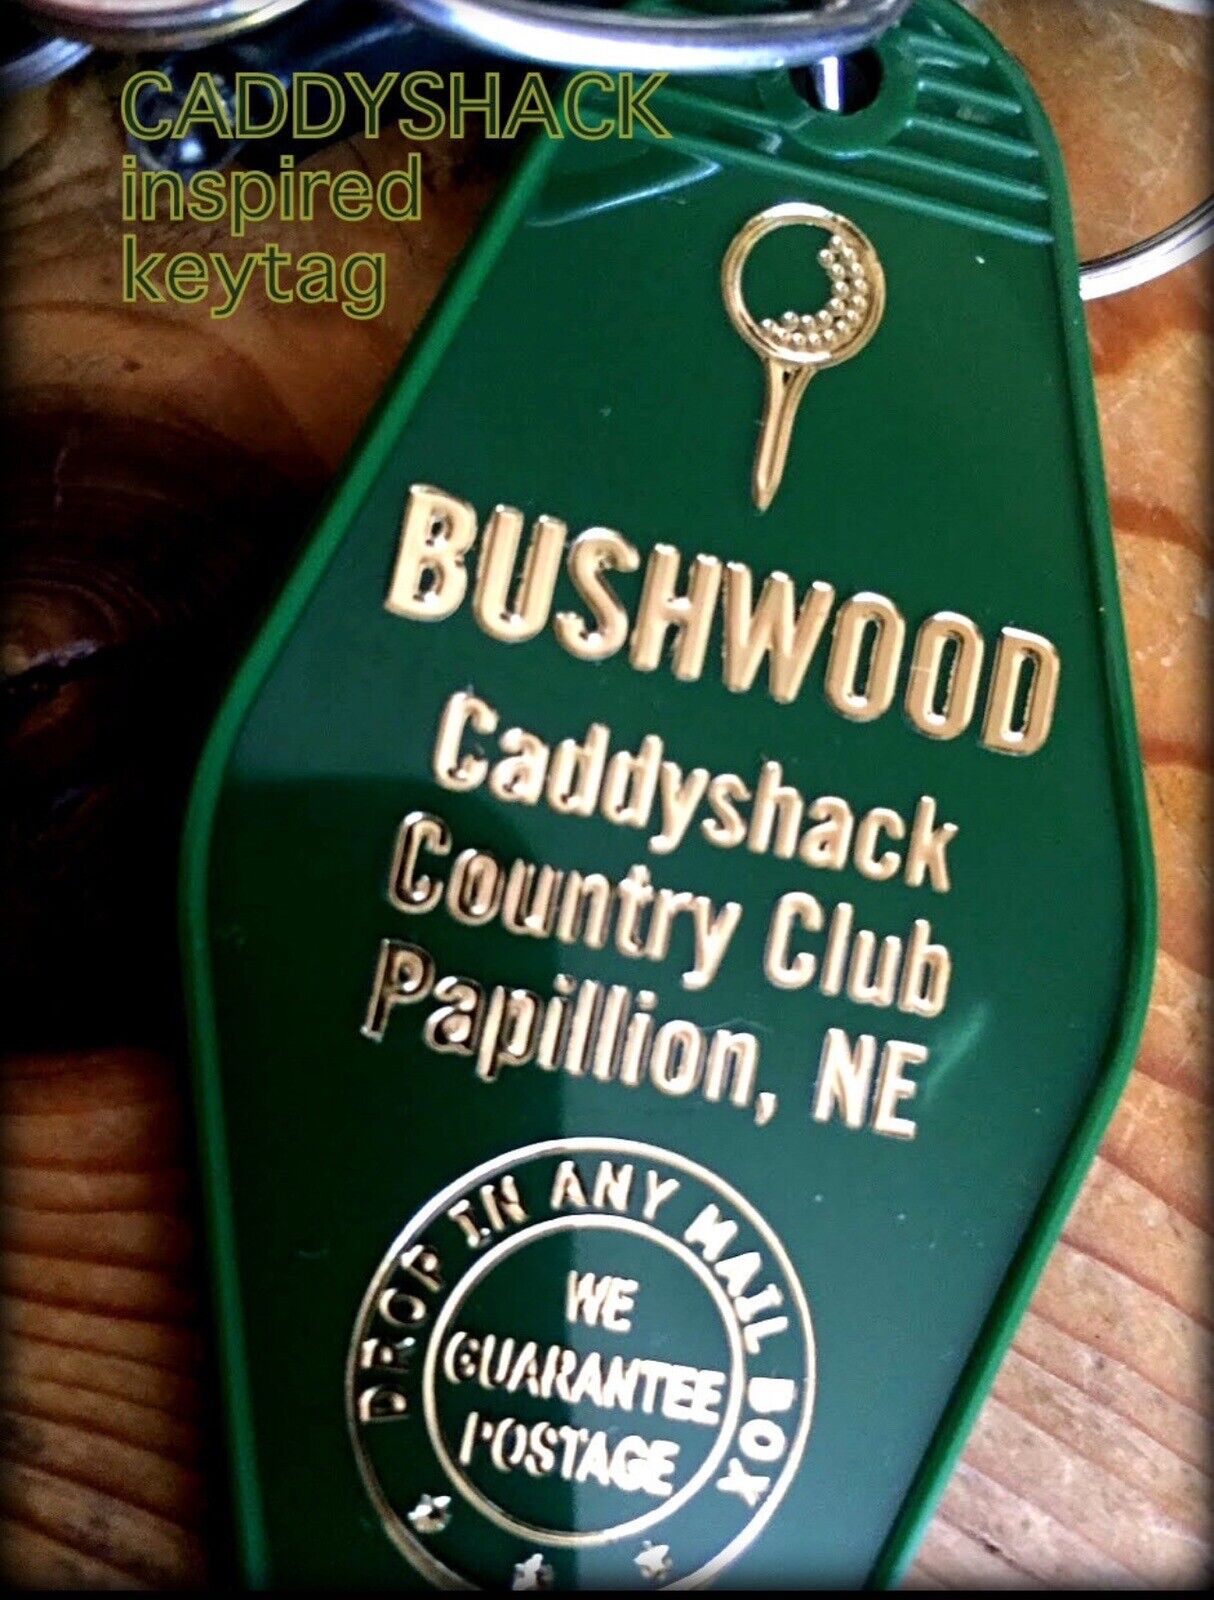 CADDYSHACK inspired BUSHWOOD Country Club Keytag.